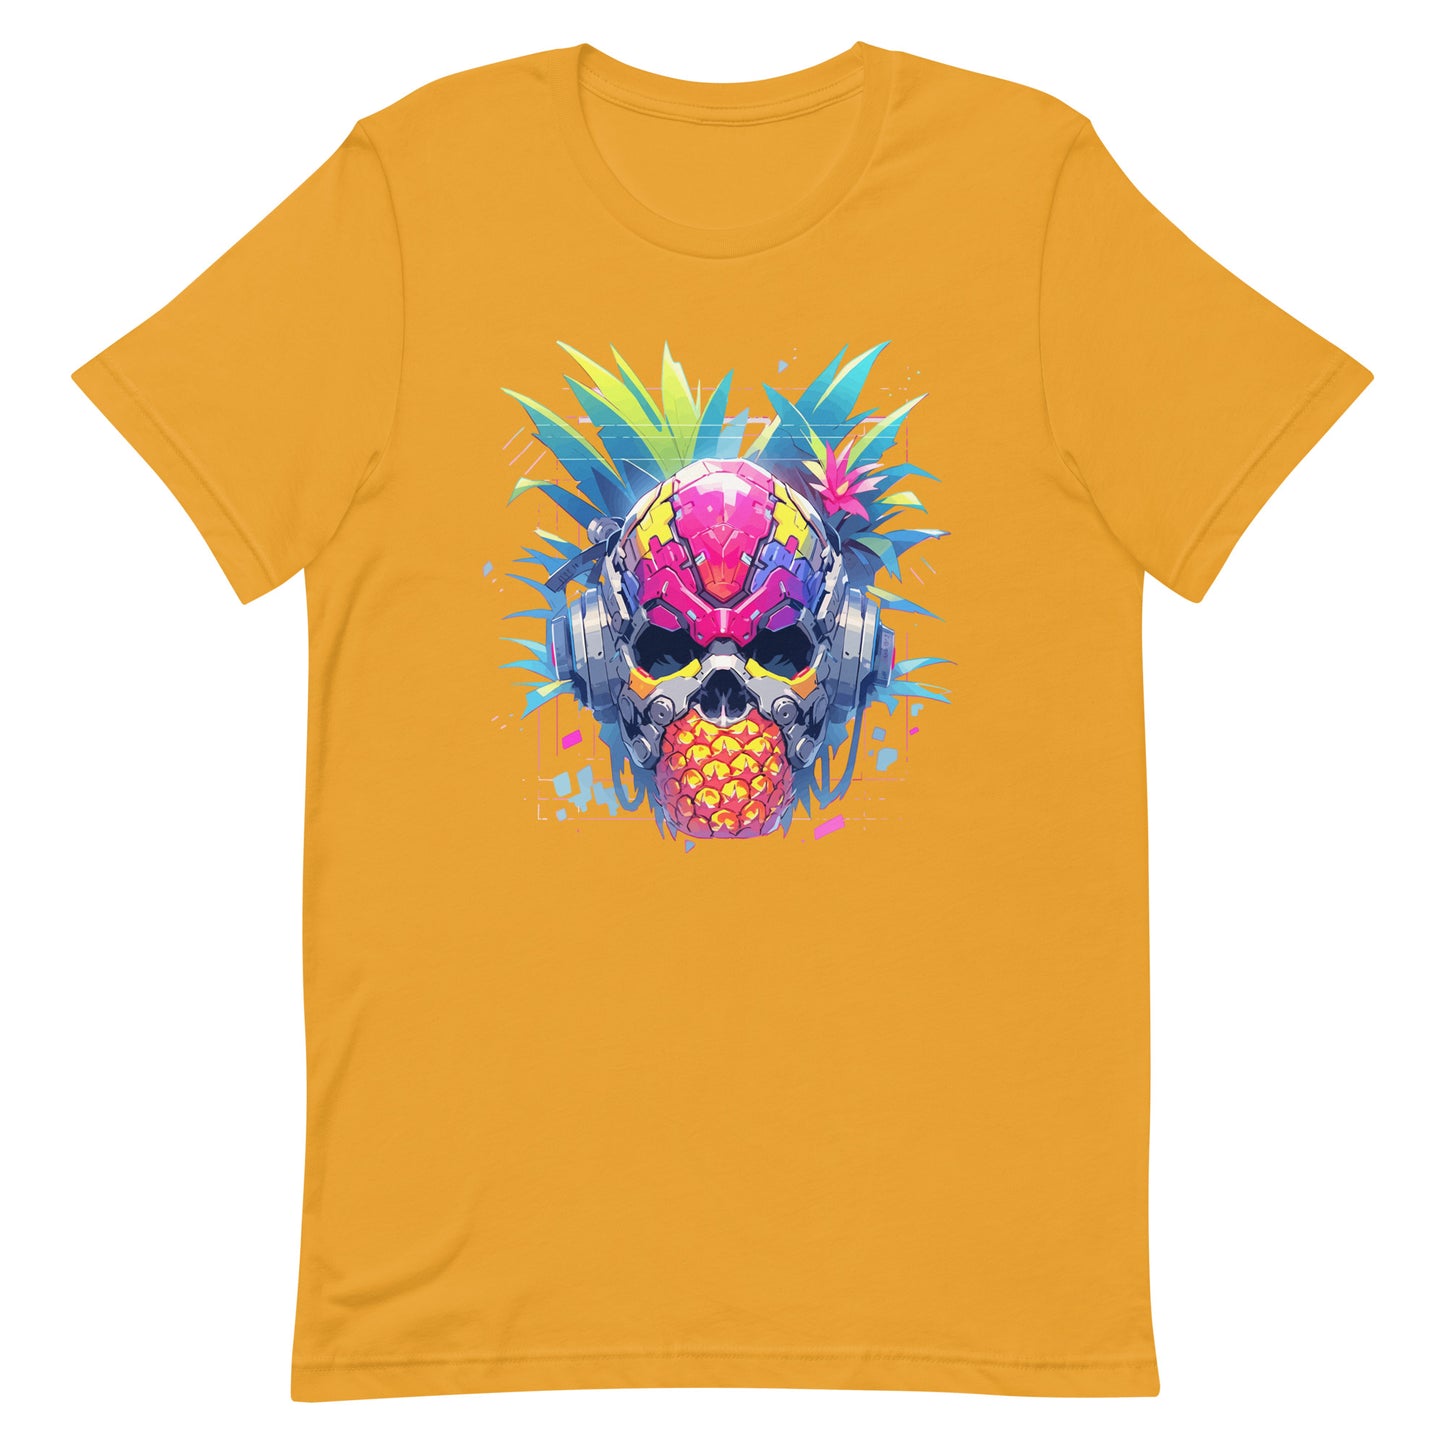 Cyber skull, Fantastic cyborg pineapple head, Pineapple monster Pop Art, Fantasy fruit illustration - Unisex t-shirt